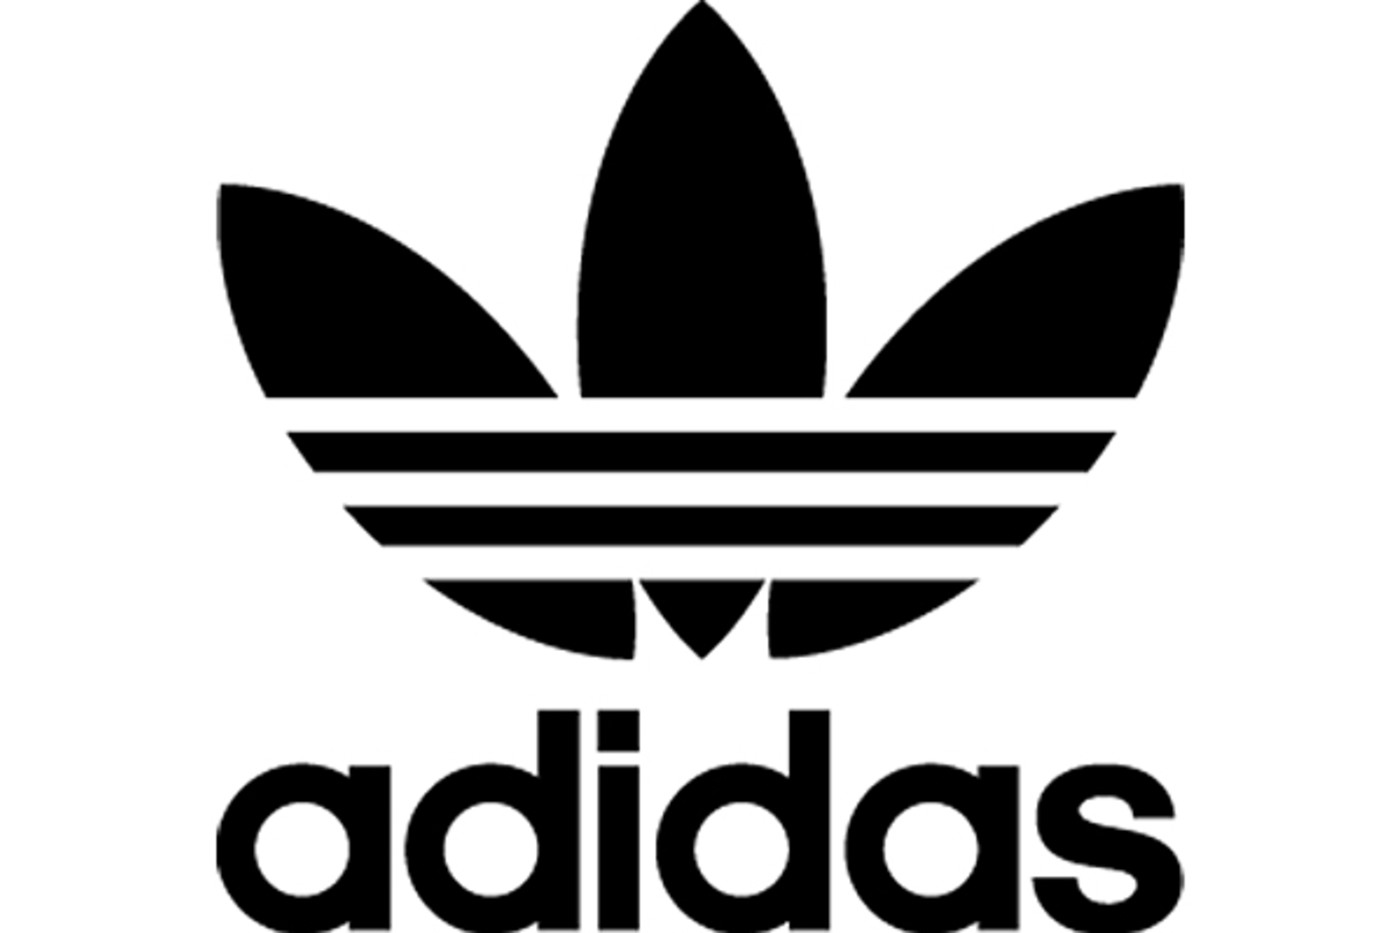 adidas 3 leaf logo